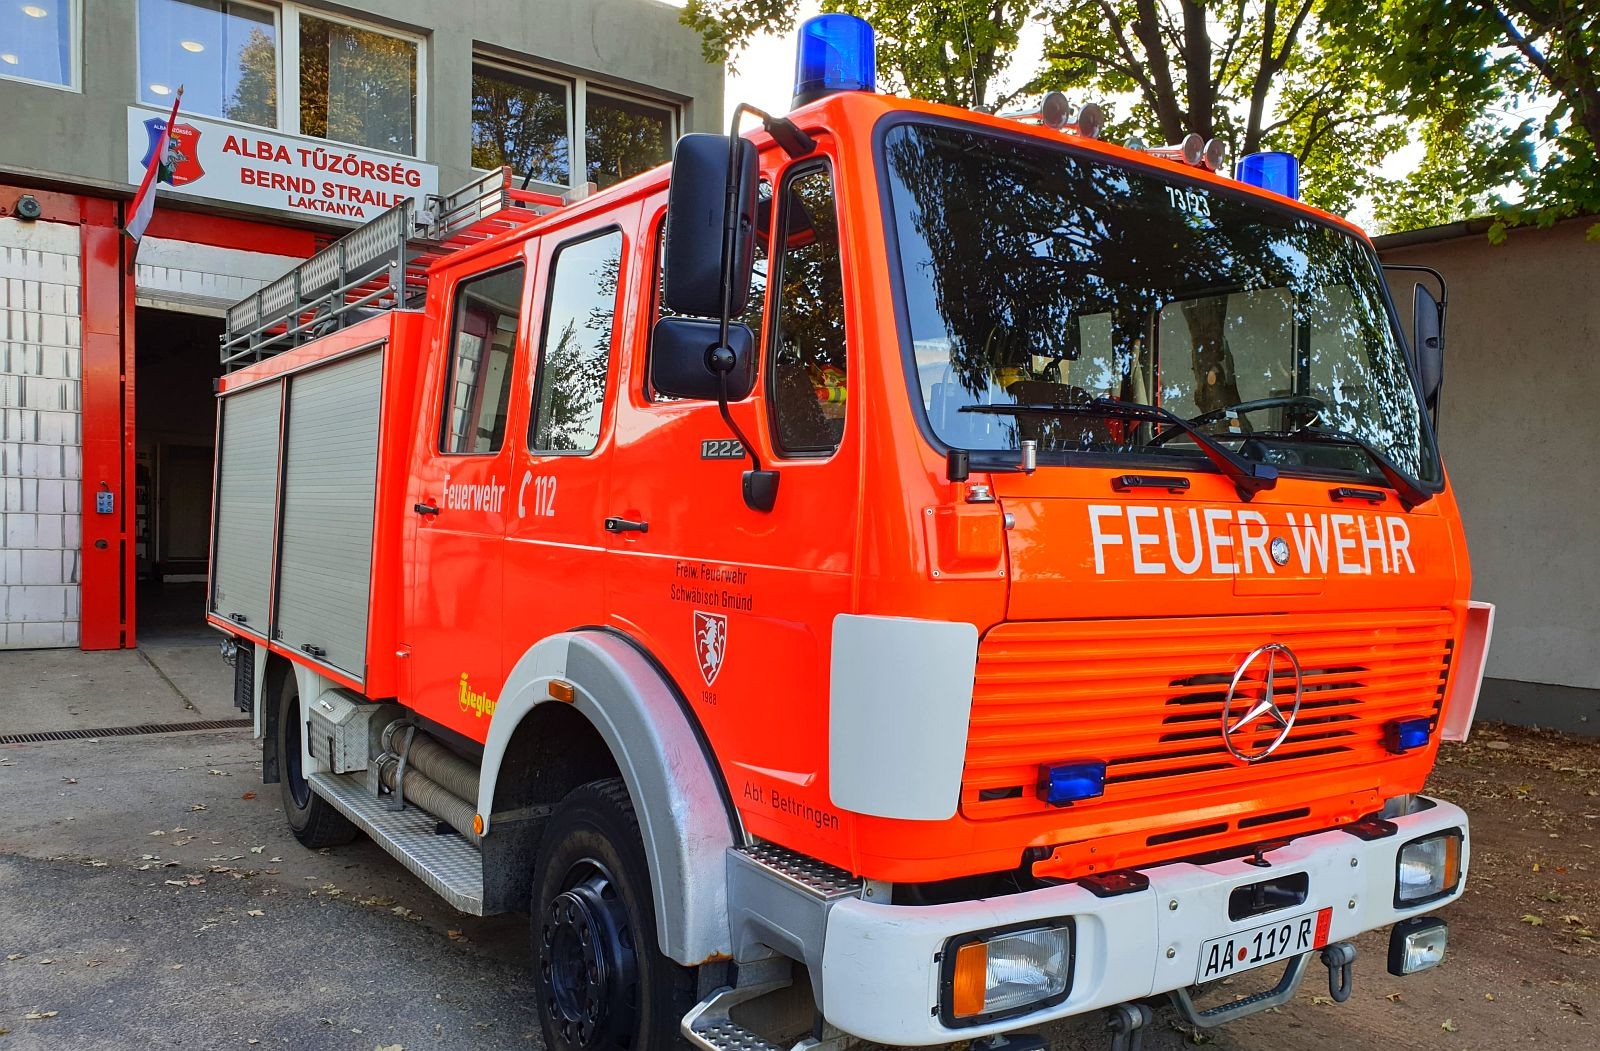 Újabb német tűzoltó autóval gyarapodott a Fehérvári Tűzoltó Egyesület